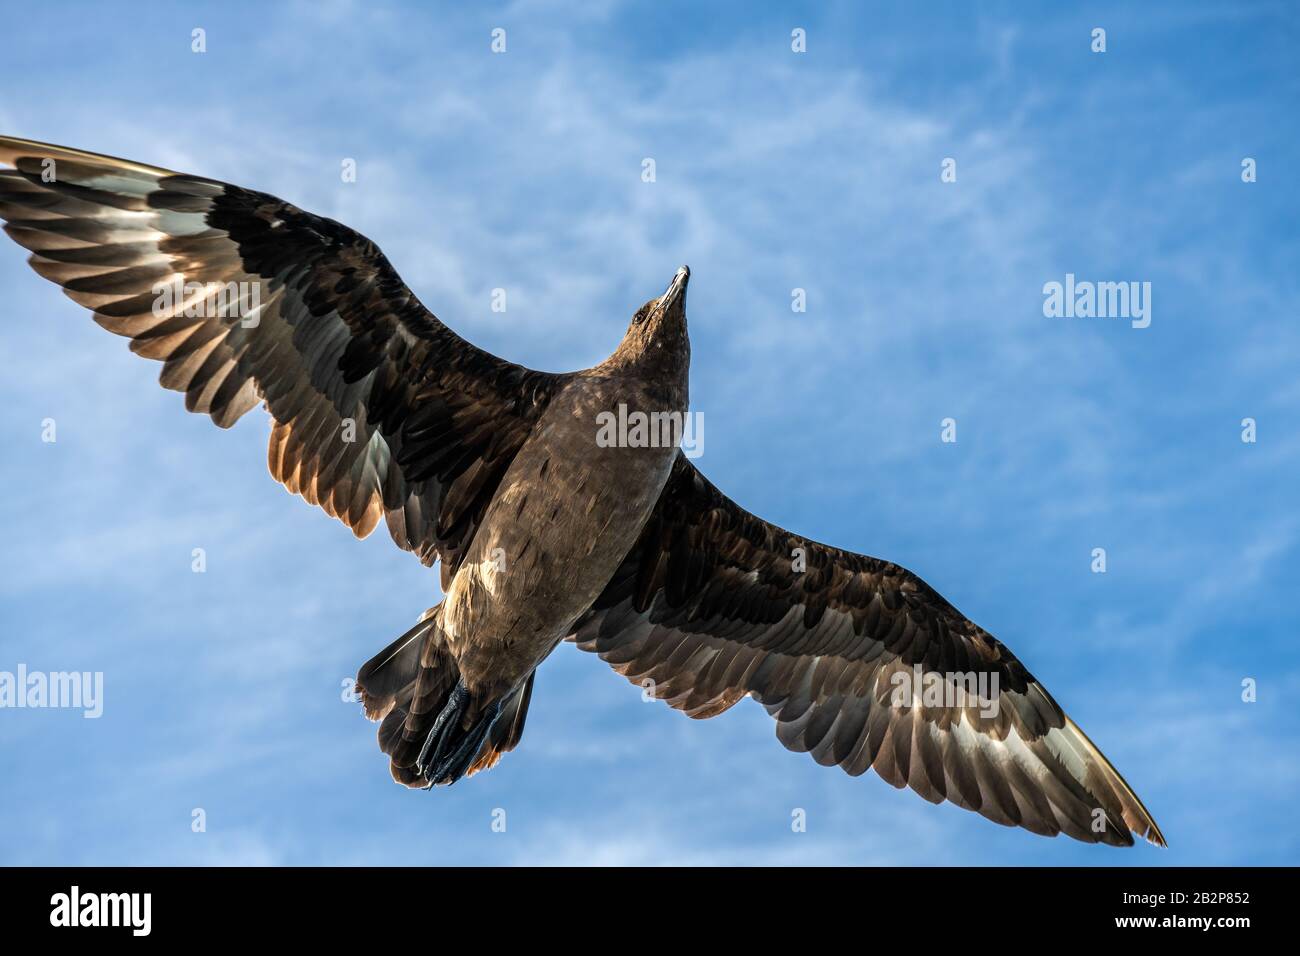 Great Skua im Flug auf blauem Himmel Hintergrund. Wissenschaftlicher Name: Catharacta skua. Untere Ansicht. Stockfoto